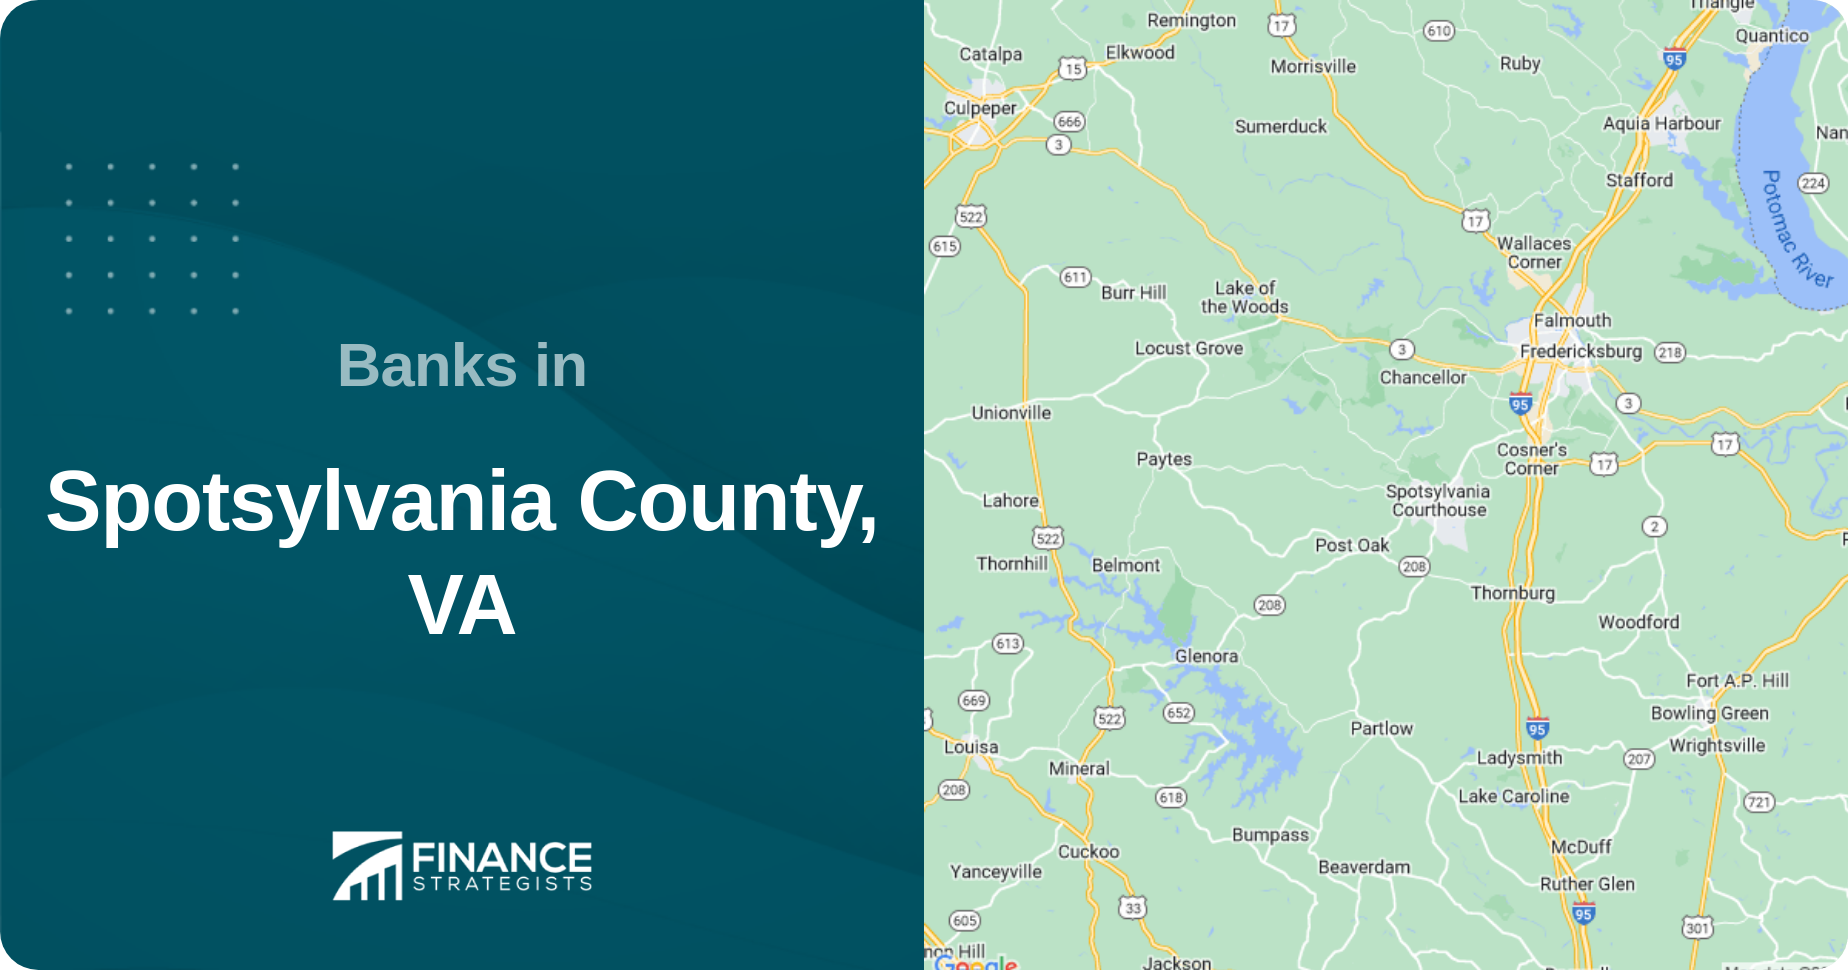 Banks in Spotsylvania County, VA